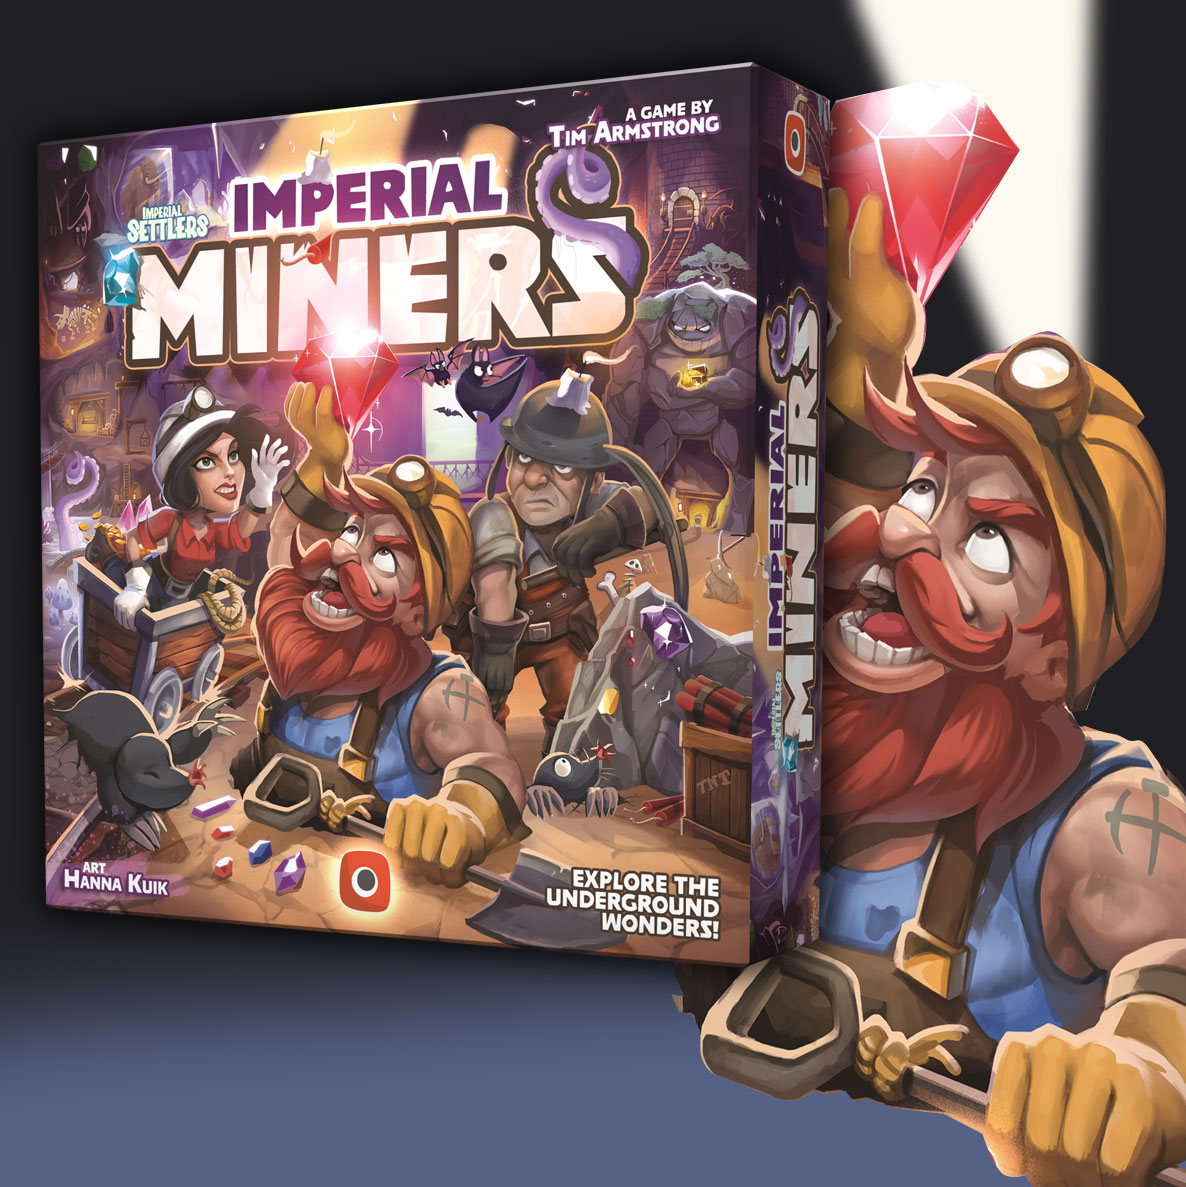 angielska okładka gry Imperial Miners